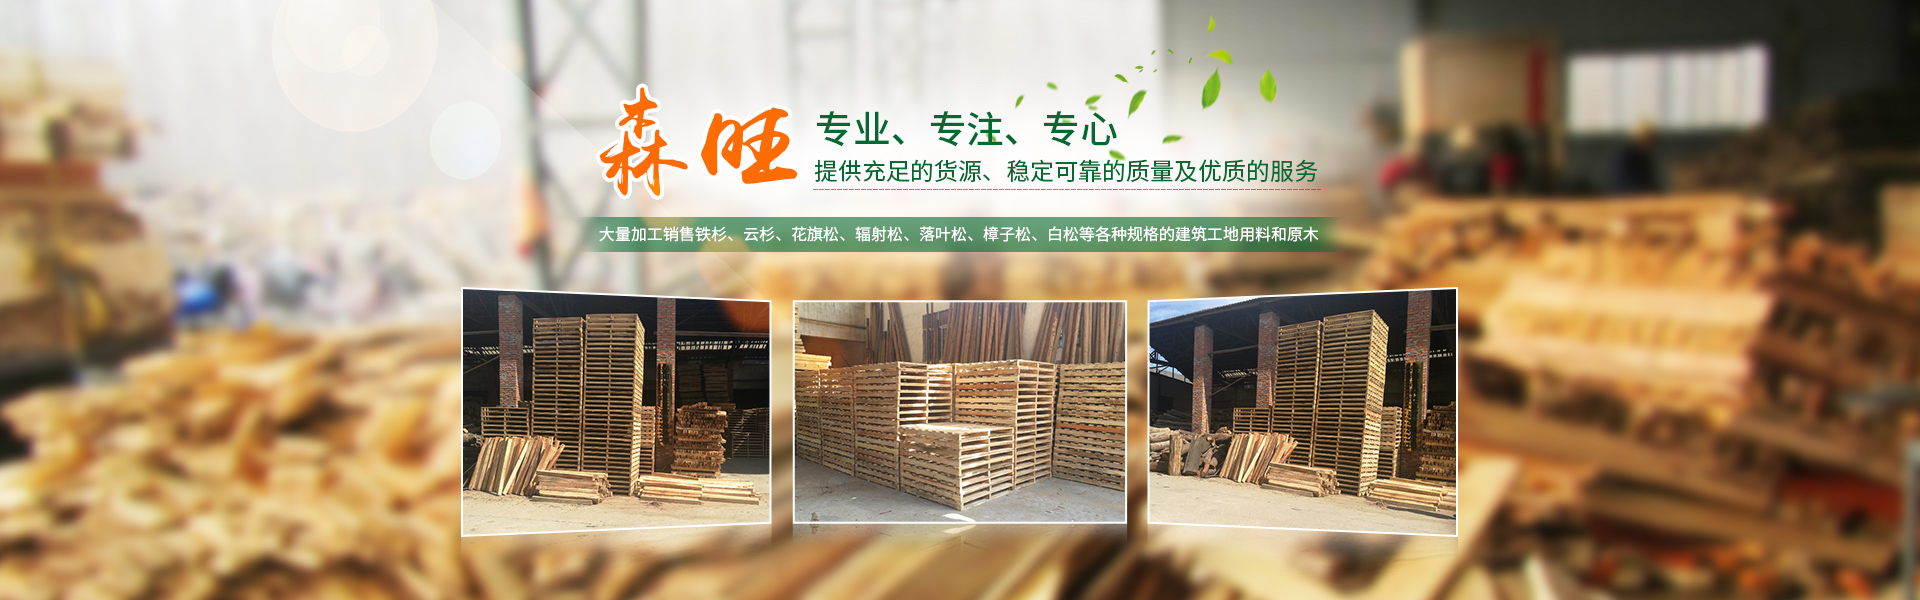 岳阳市森旺工贸有限公司_岳阳木托盘厂家|木质包装箱厂家|木方厂家